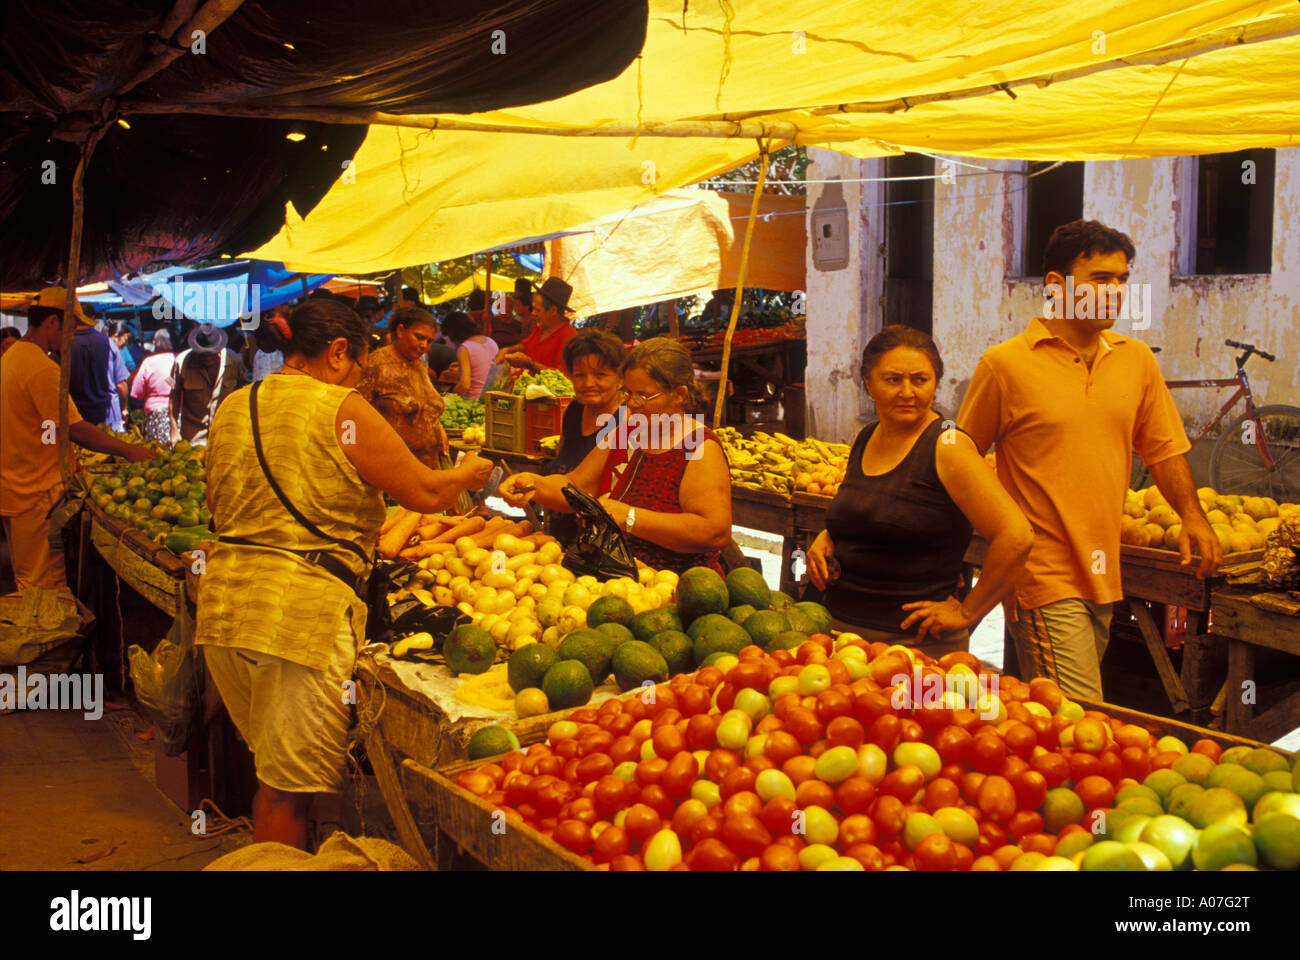 Street Market, Lebensmittel zum Verkauf (Gemüse, Obst) - populäre Commerce für einkommensschwache Kunden häufig bei kleinen Städte im Nordosten Brasiliens. Stockfoto